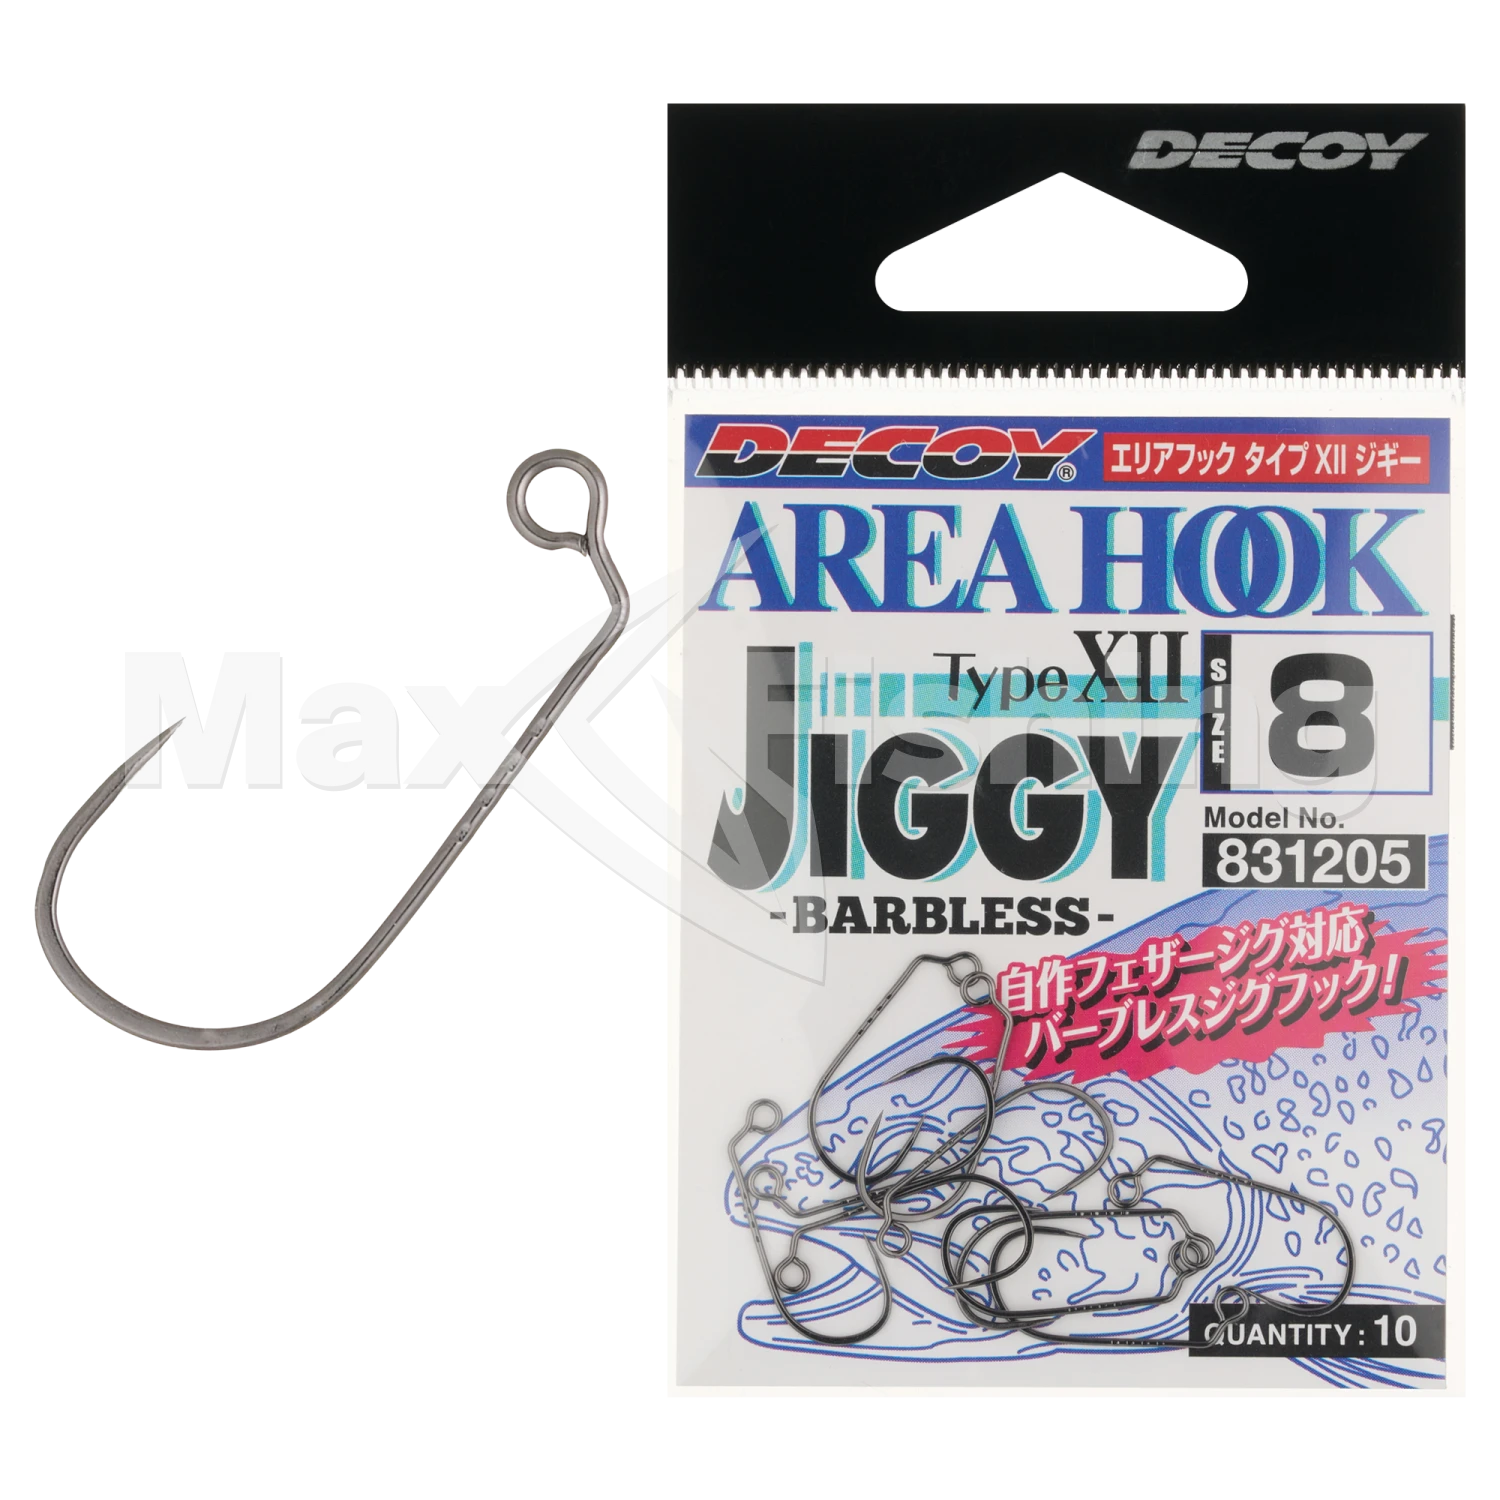 Крючок одинарный Decoy AH-12 Area Hook Jiggy #8 (10шт)